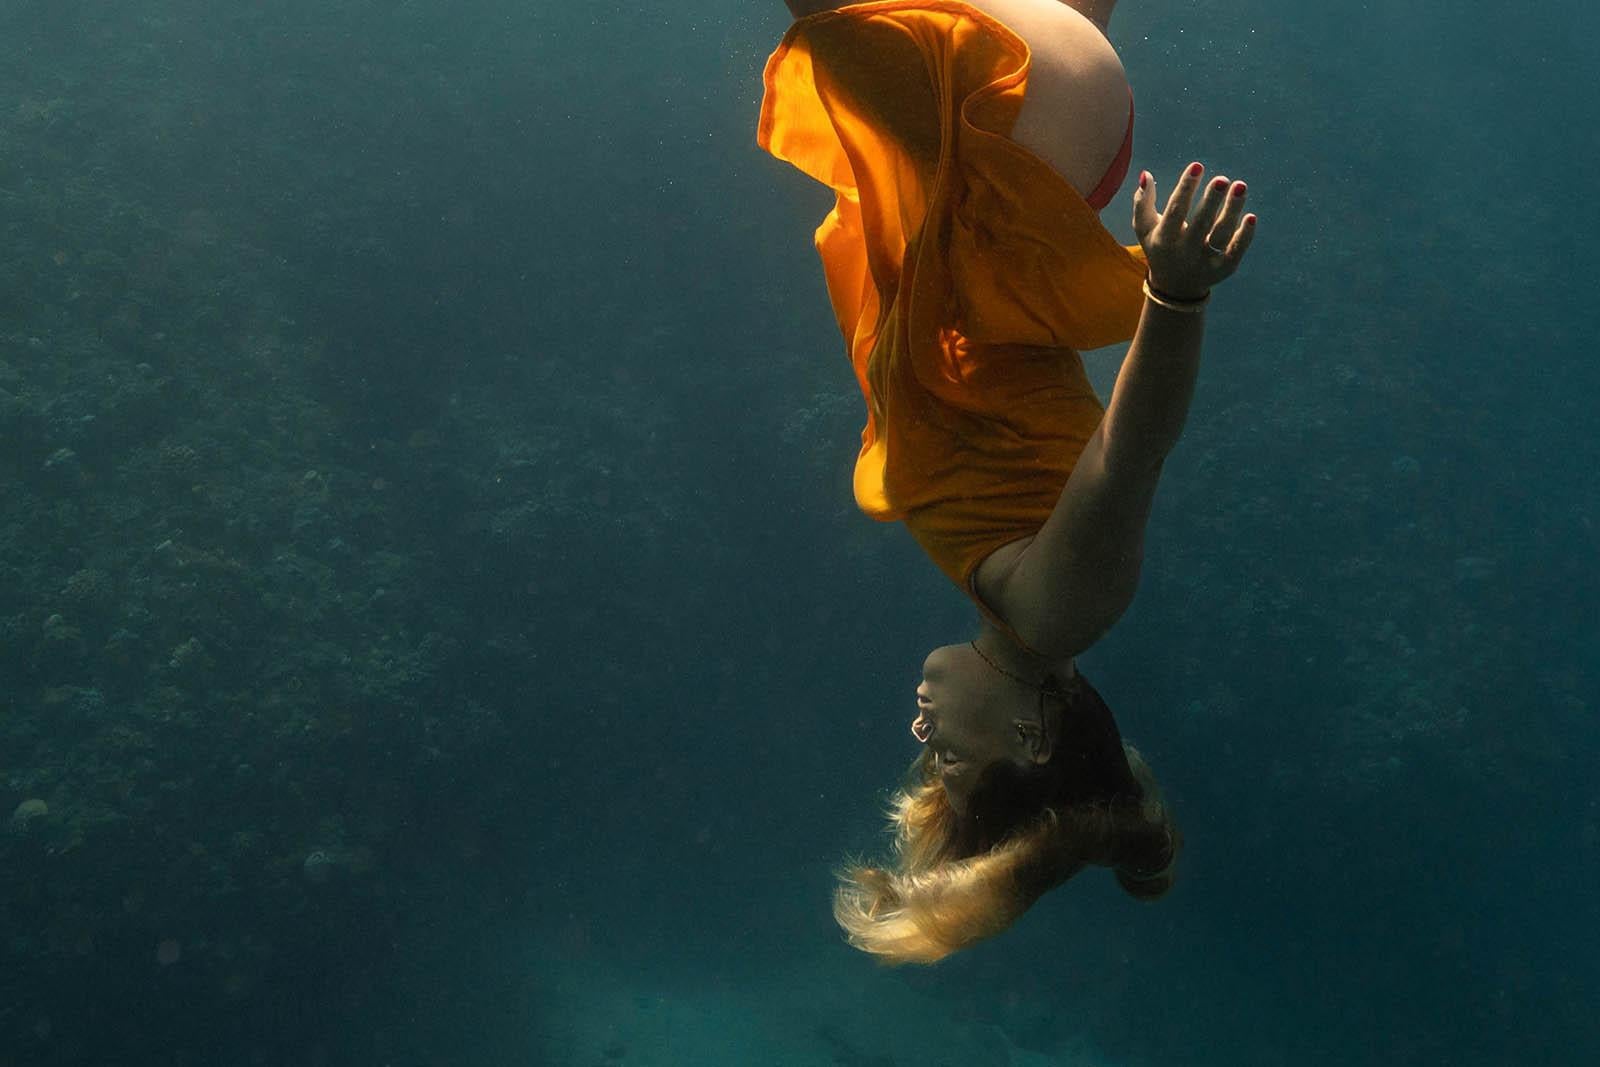 Synchronisiertes Schwimmen im Blau – Kunstdruck, Farbe unter Wasser, großes Foto – Photograph von Olivier Borde